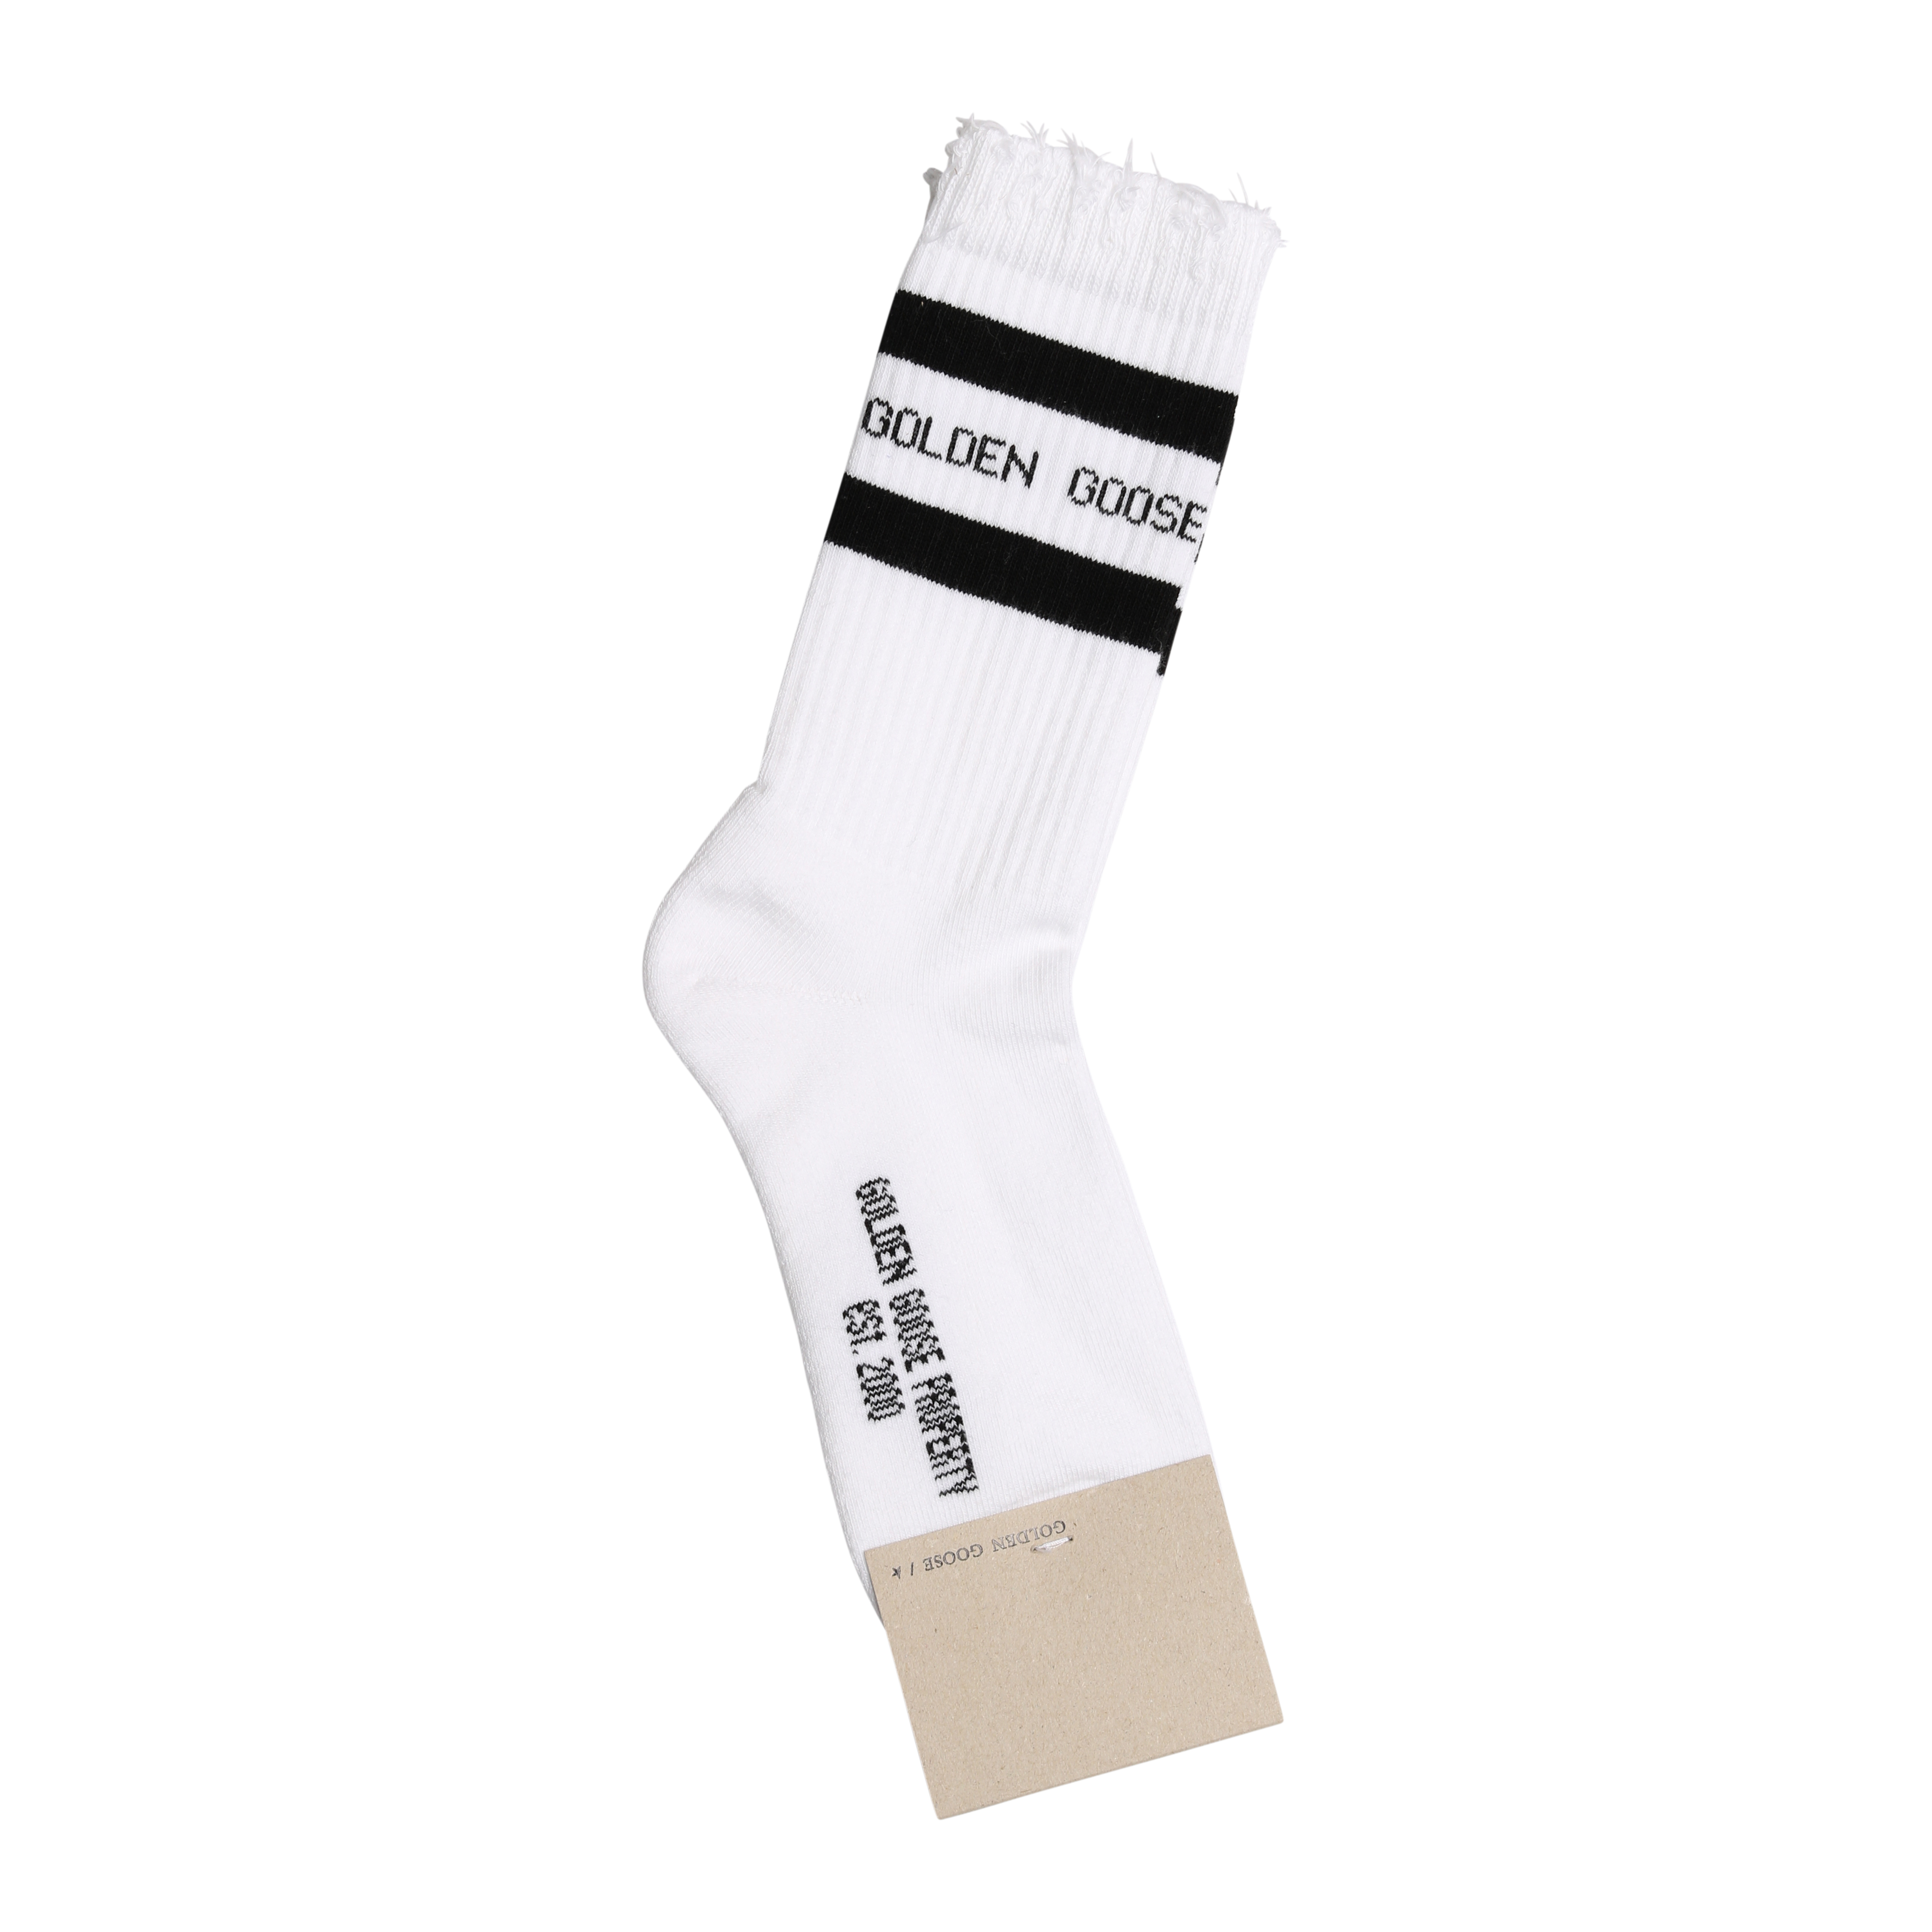 Golden Goose Socks High Rib in White/Black